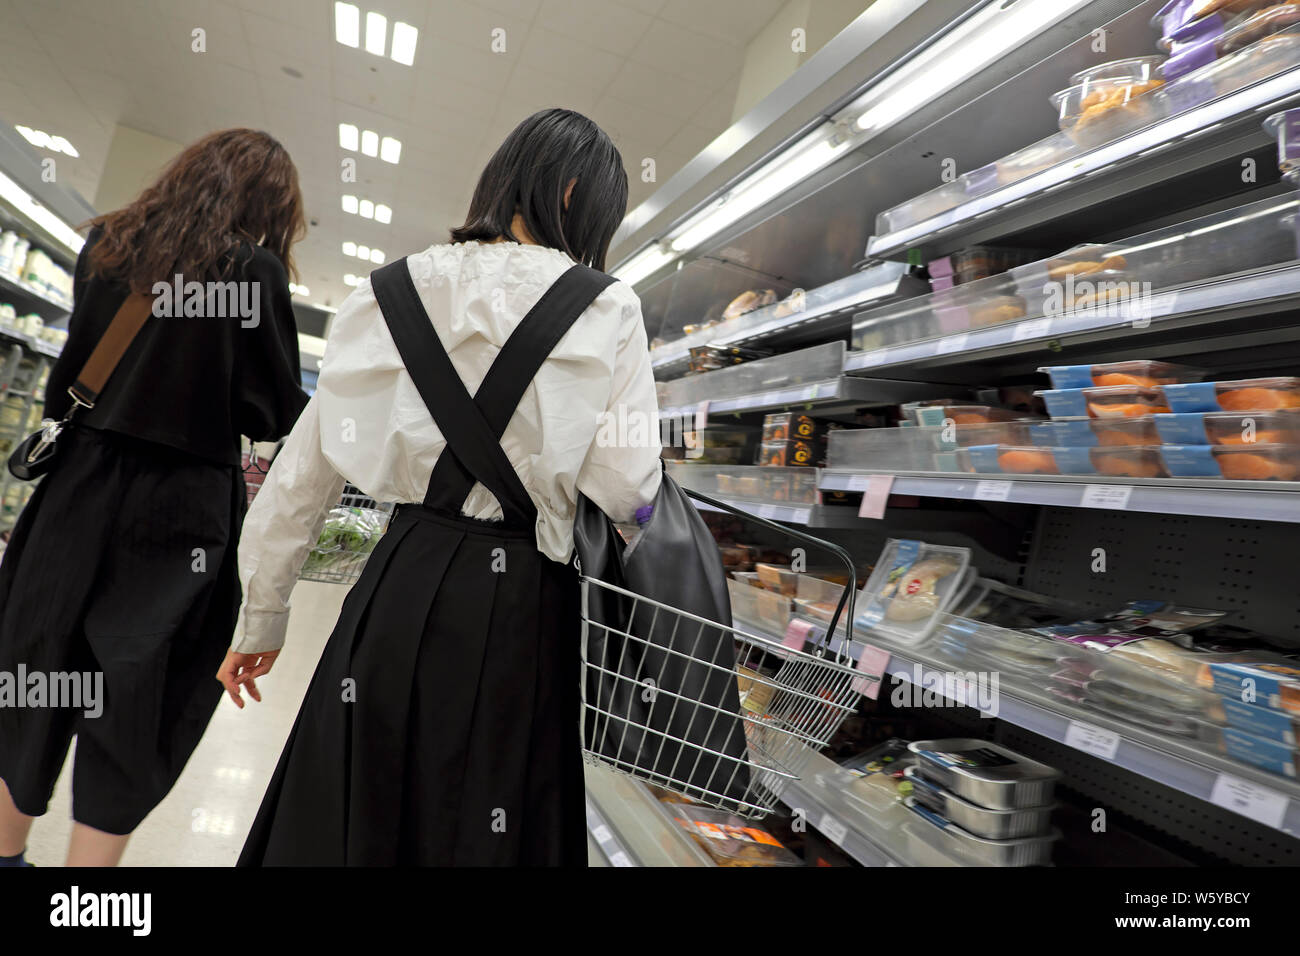 Ansicht der Rückseite zwei junge Frauen Kunden person Einkaufen im Supermarkt Waitrose Kälte- gang London England UK KATHY DEWITT Stockfoto